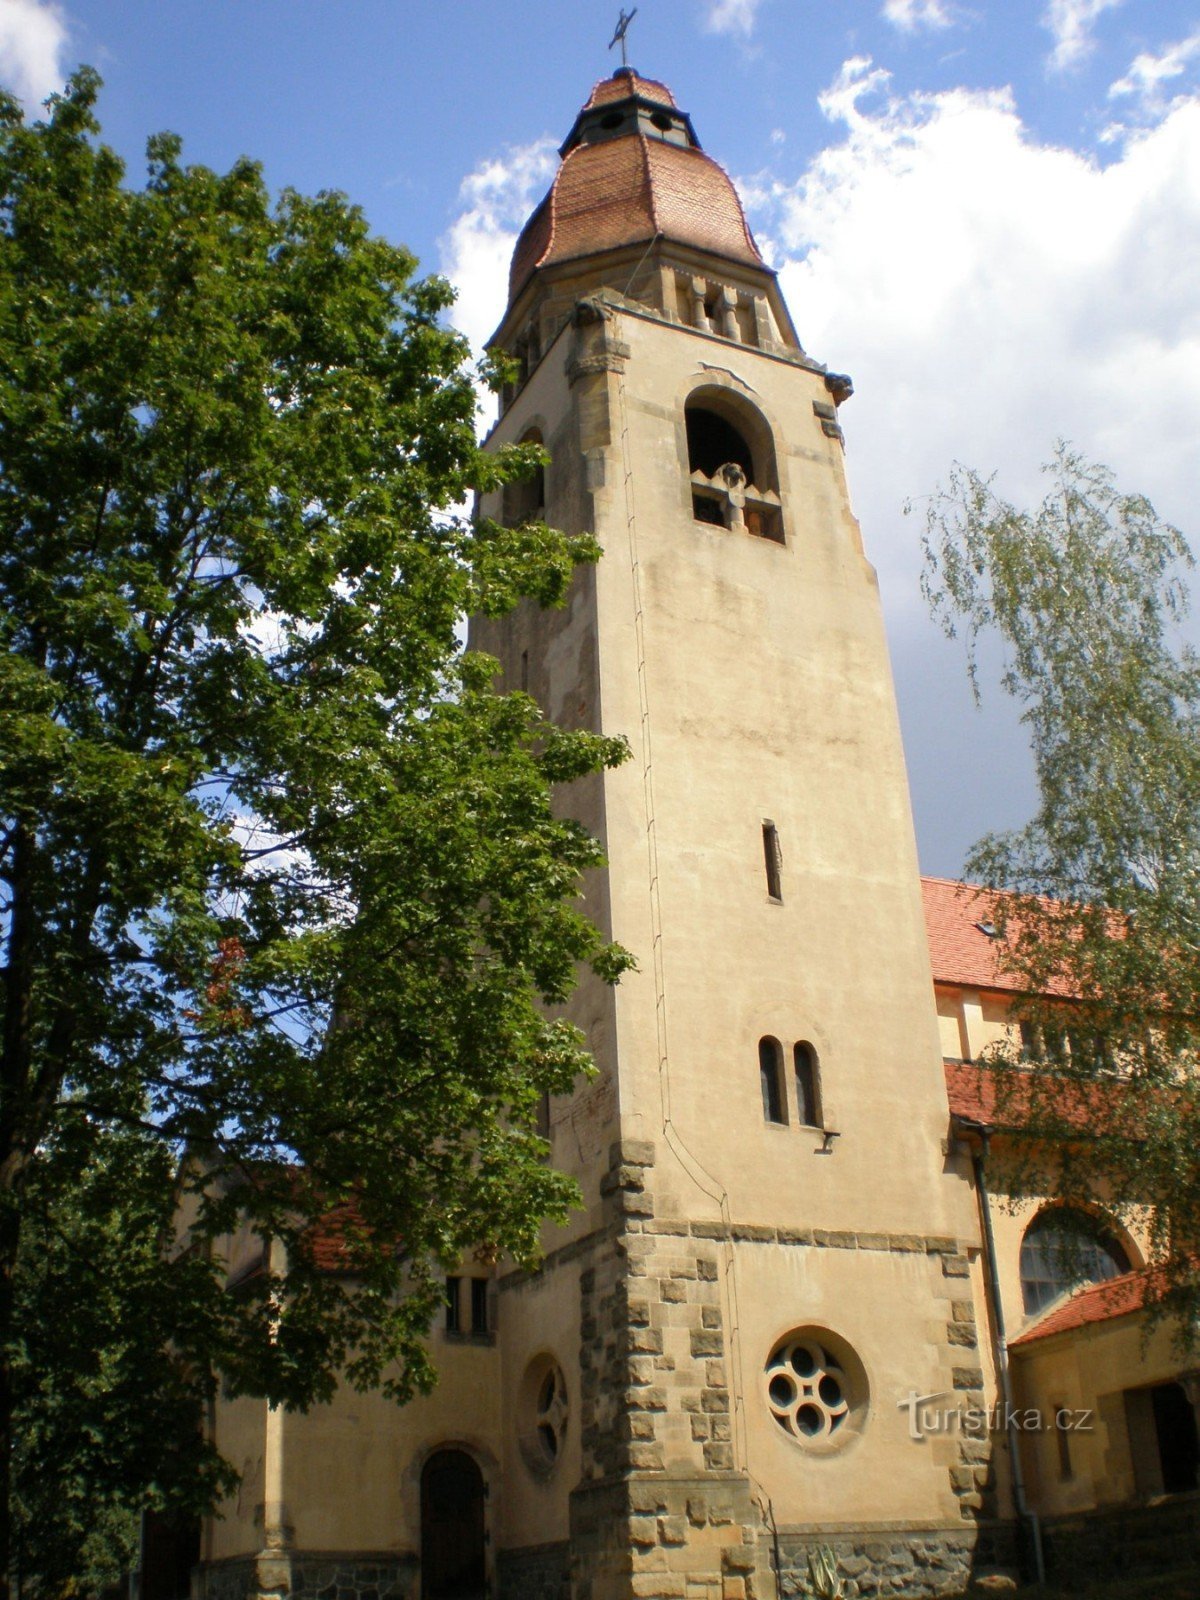 Štěchovice - Chiesa di S. Jan Nepomucký